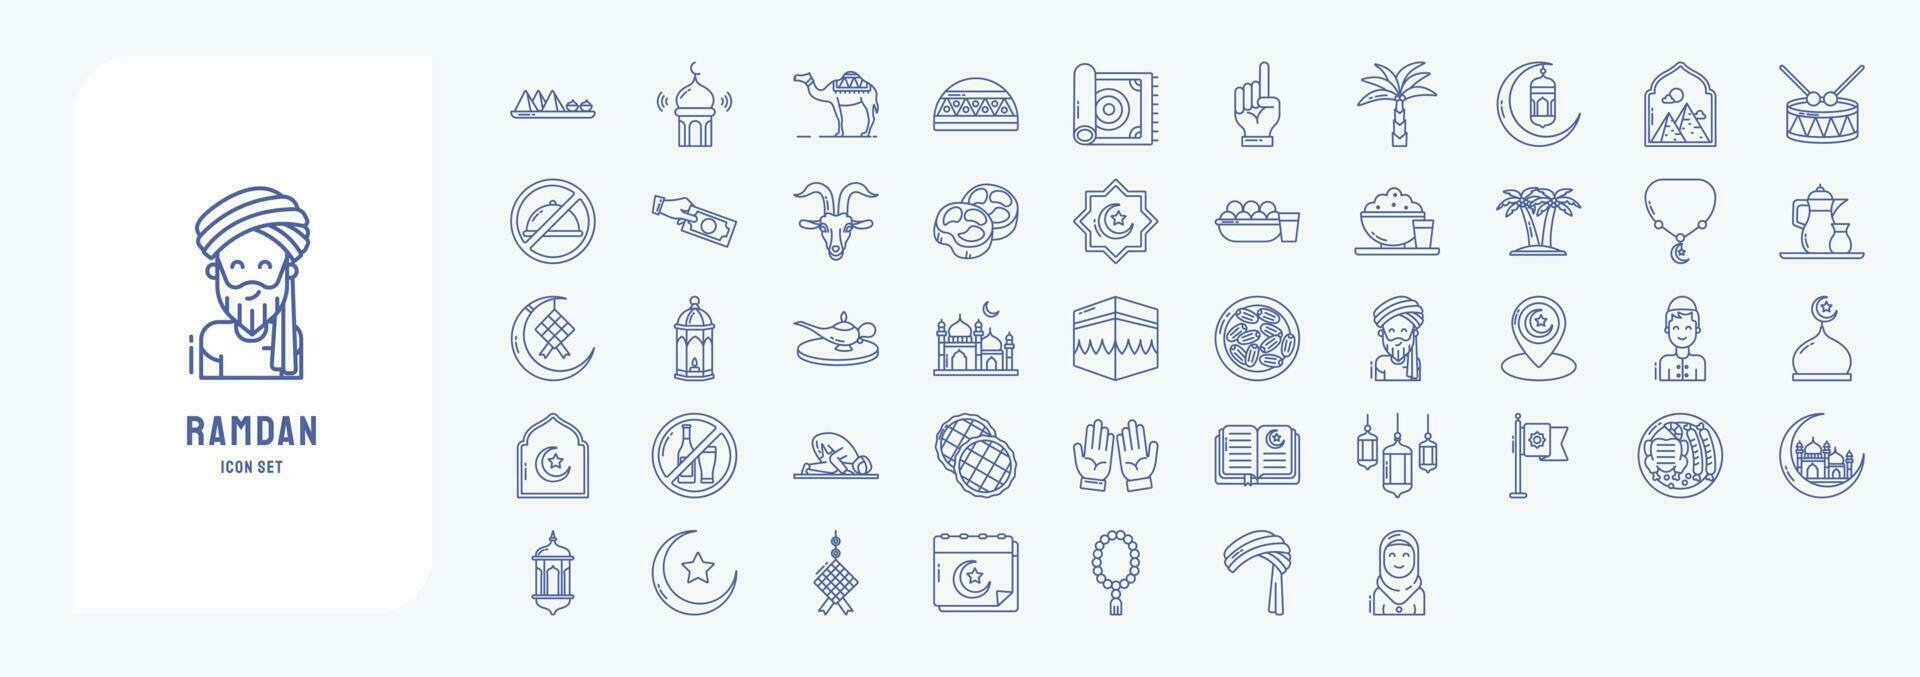 verzameling van pictogrammen verwant naar Ramadan, inclusief pictogrammen Leuk vinden iftar, masker, bidden en meer vector